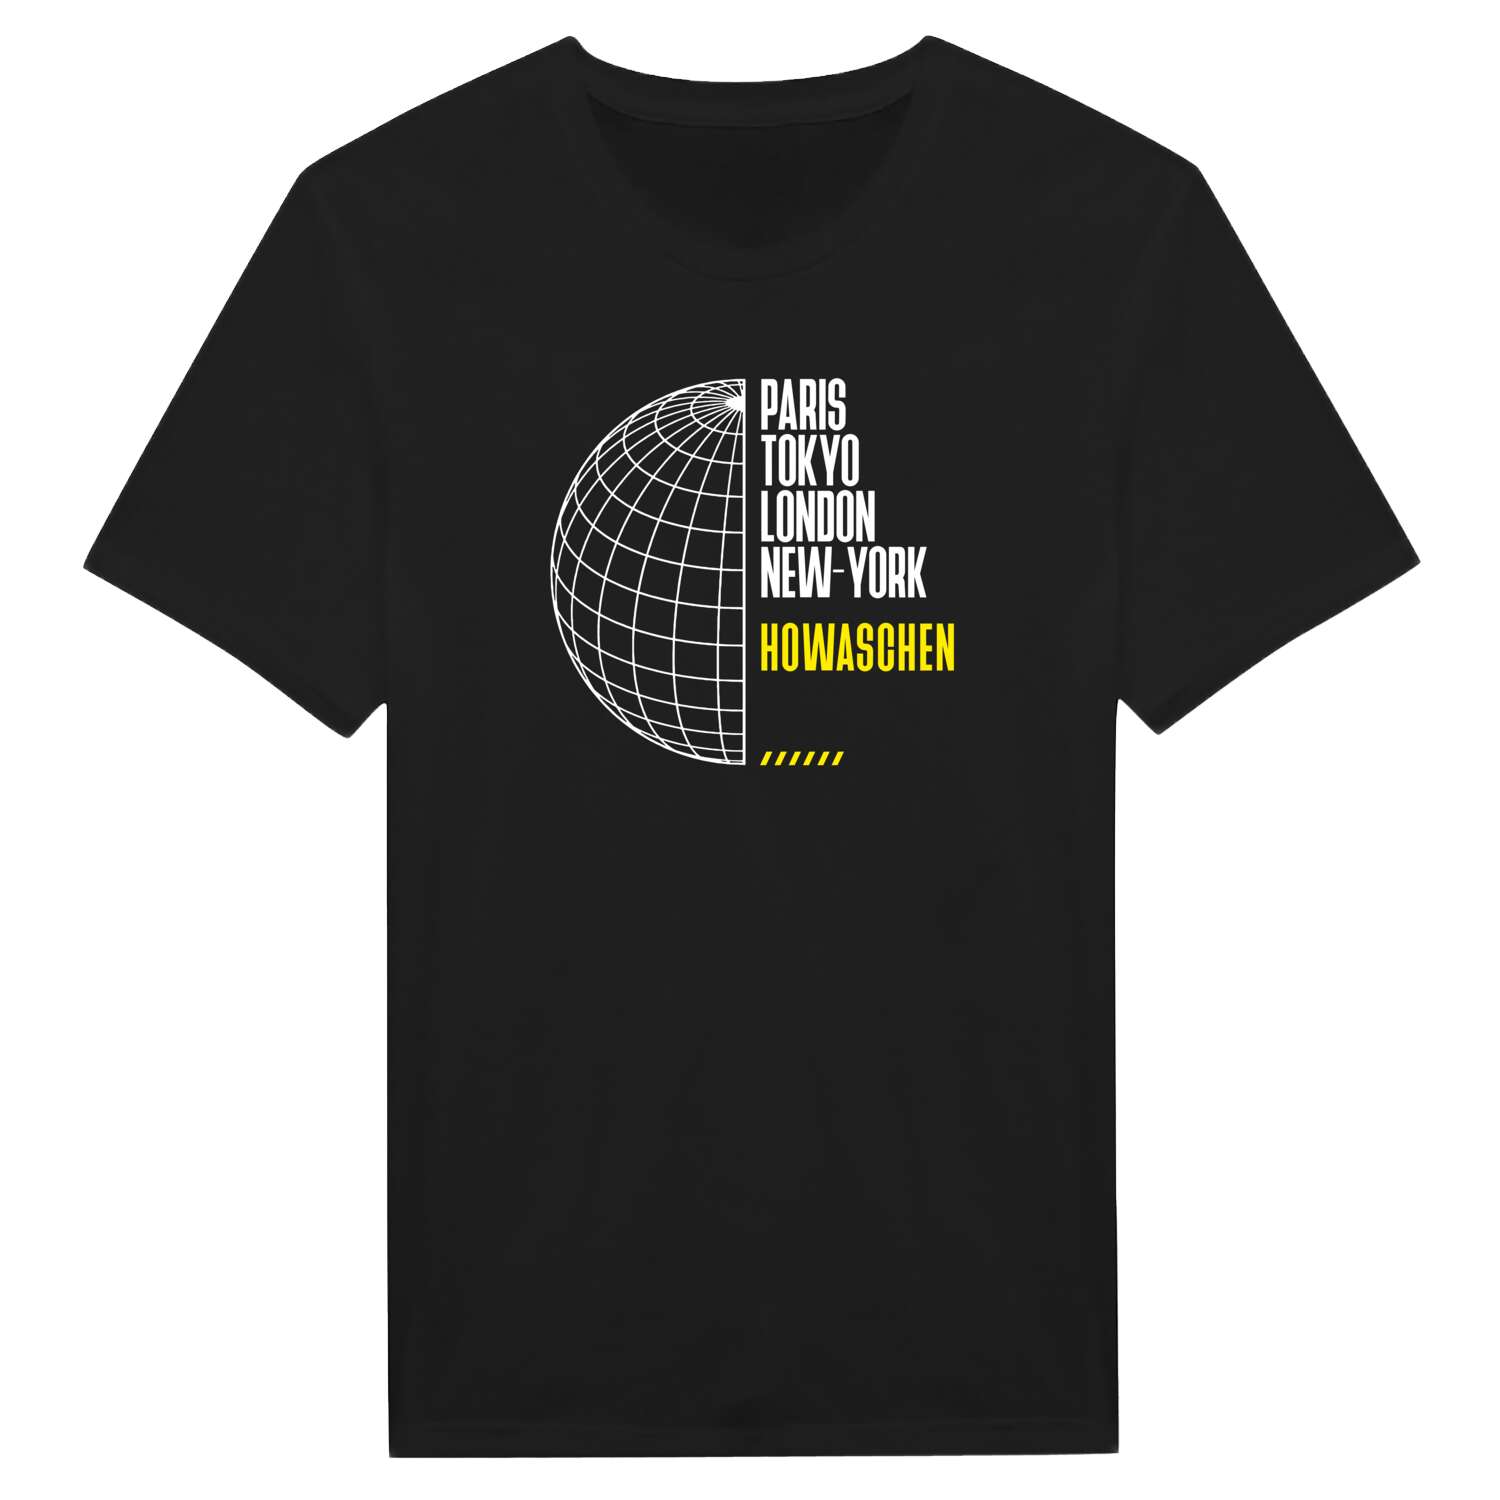 Howaschen T-Shirt »Paris Tokyo London«